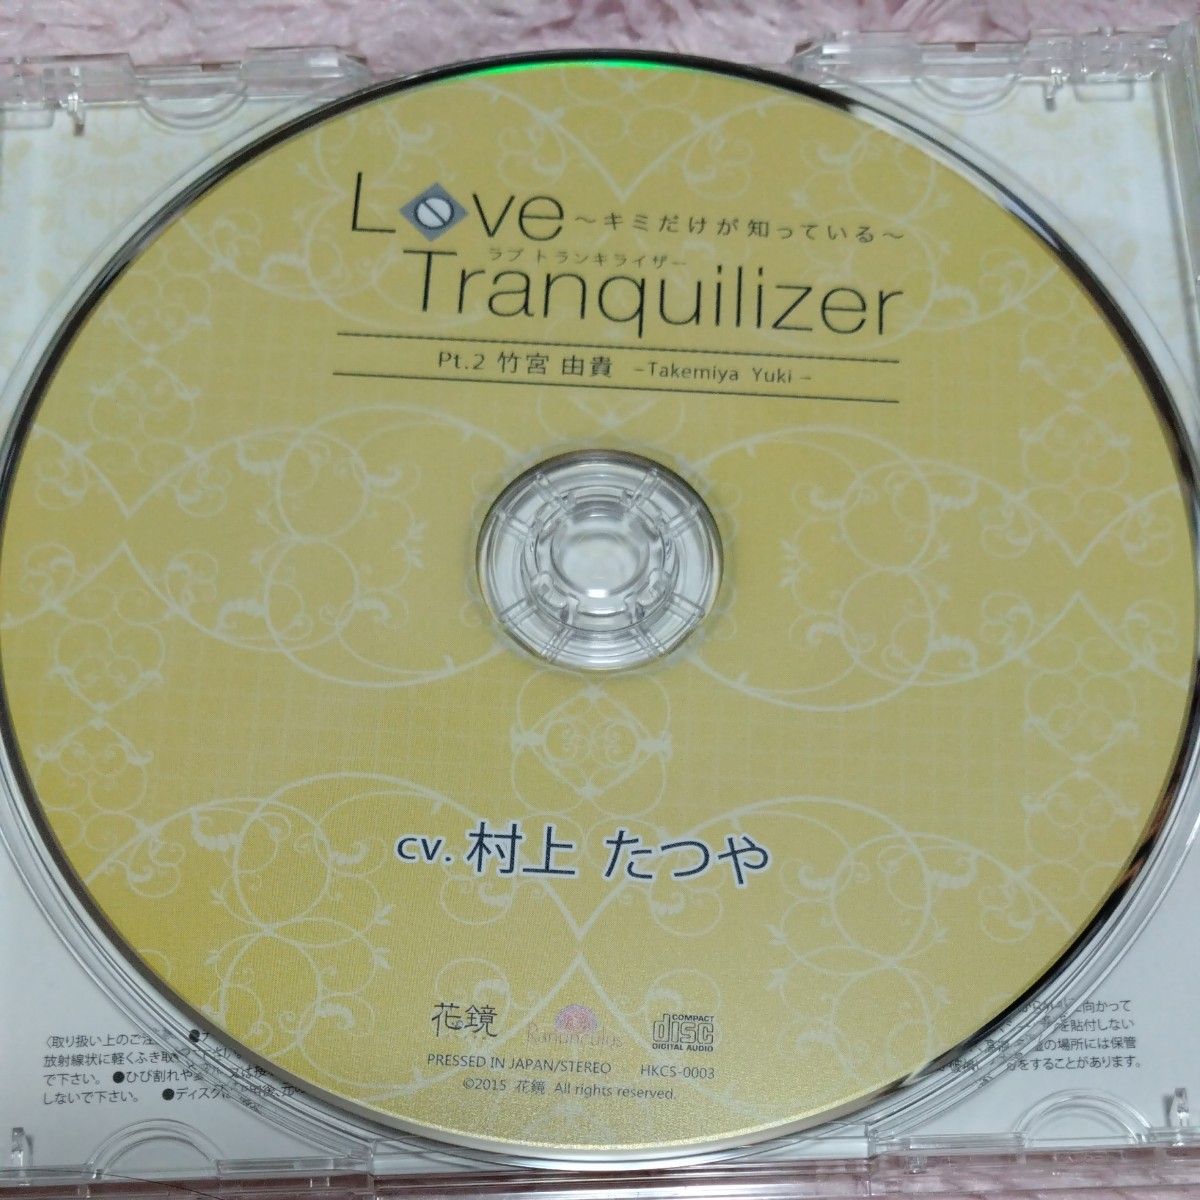 中古美品 ドラマCD シチュエーションCD Love Tranquilizer キミだけが知っている pt.2 村上たつや 花鏡 